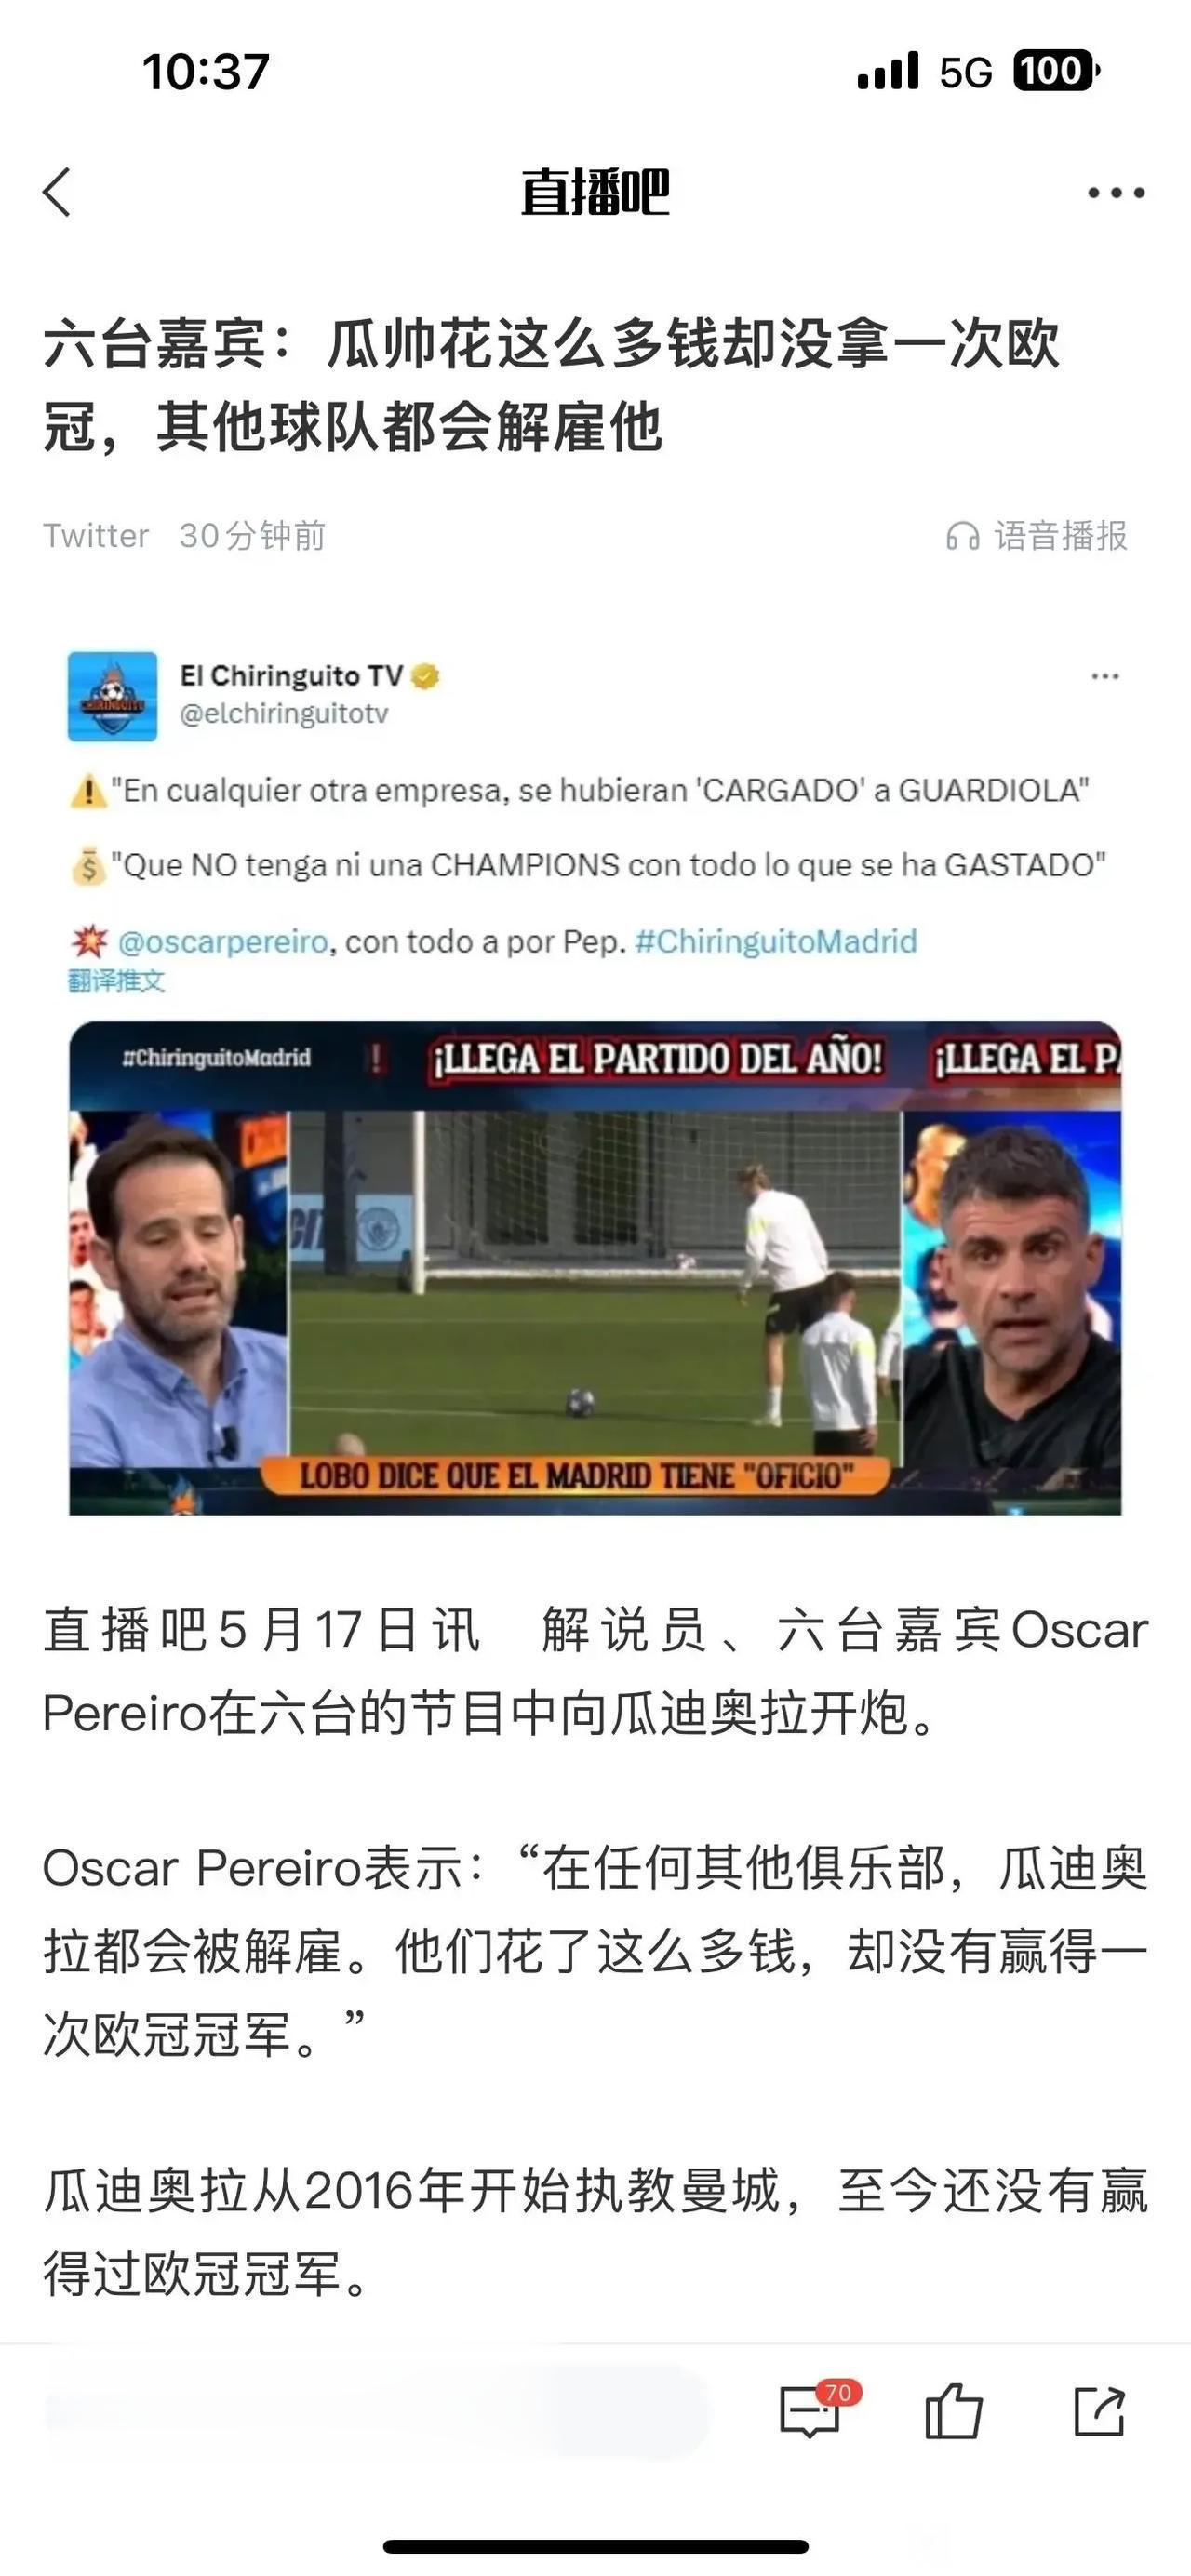 外媒说瓜迪奥拉花了那么多钱，还是拿不到欧冠冠军在其他队早下课了。

当初在拜仁没